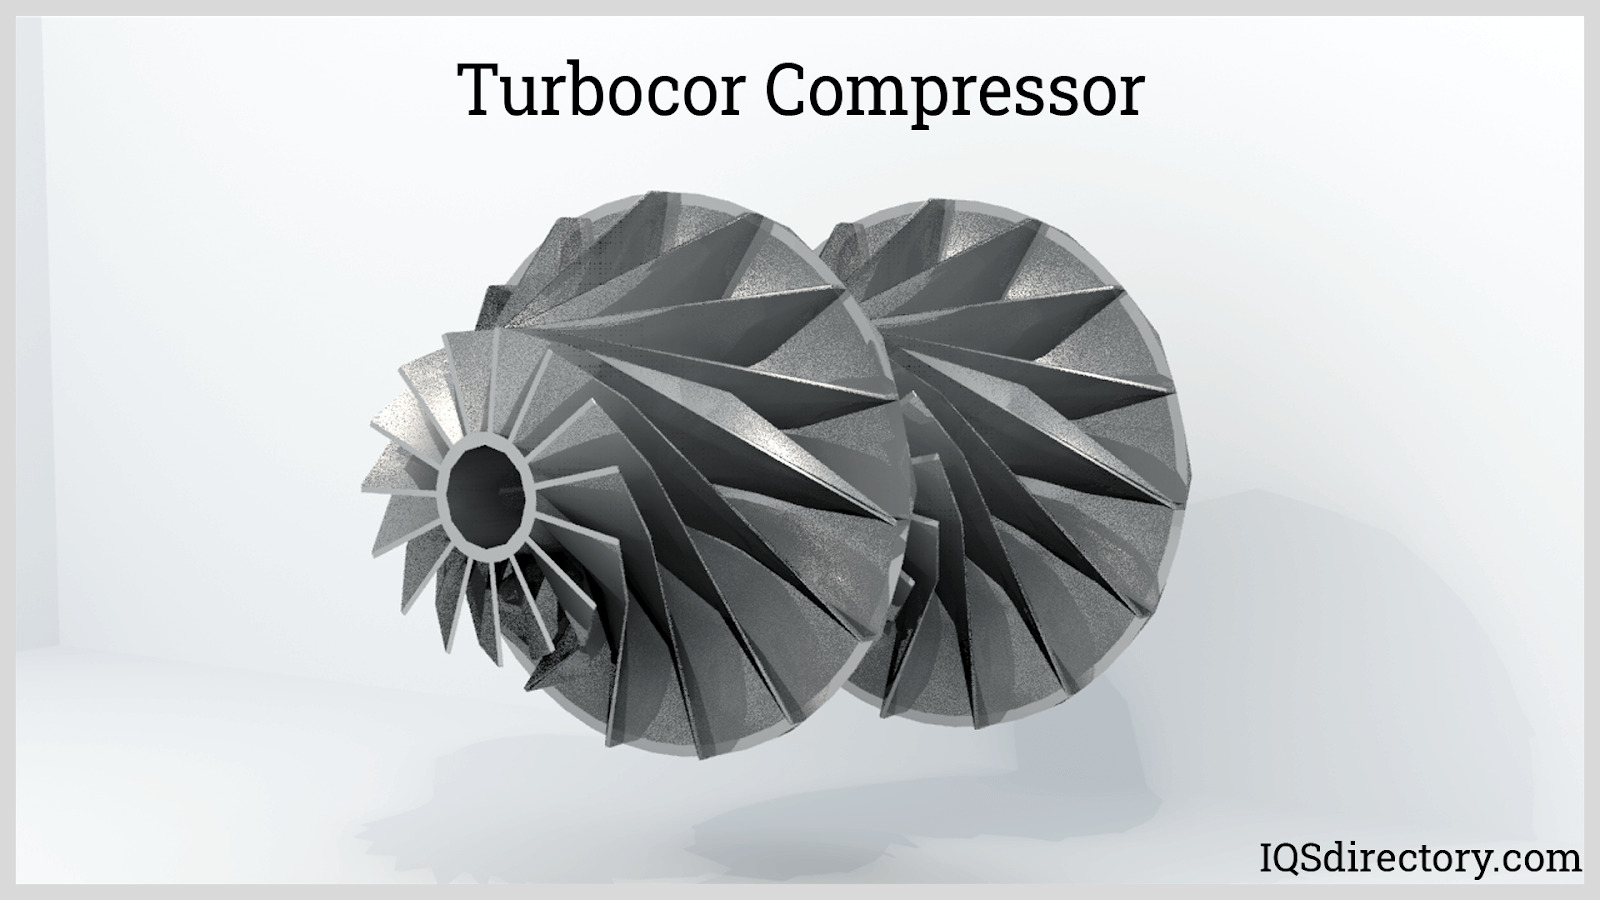 Turbocor Compressor